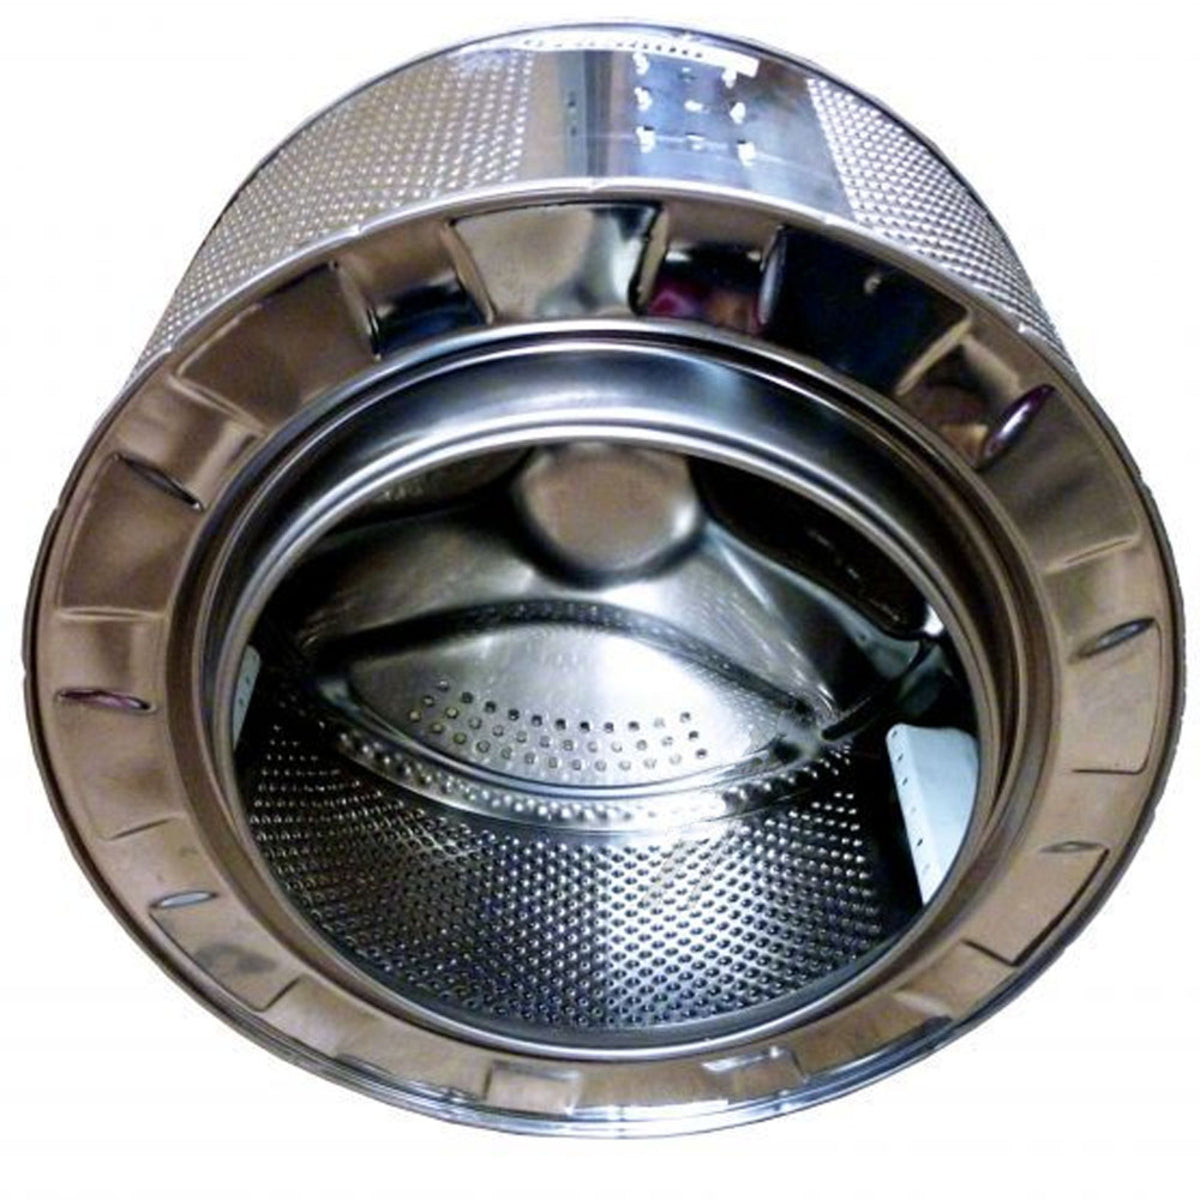 Tambor máquina lavar roupa C00113810 - Electromáquinas - Peças e